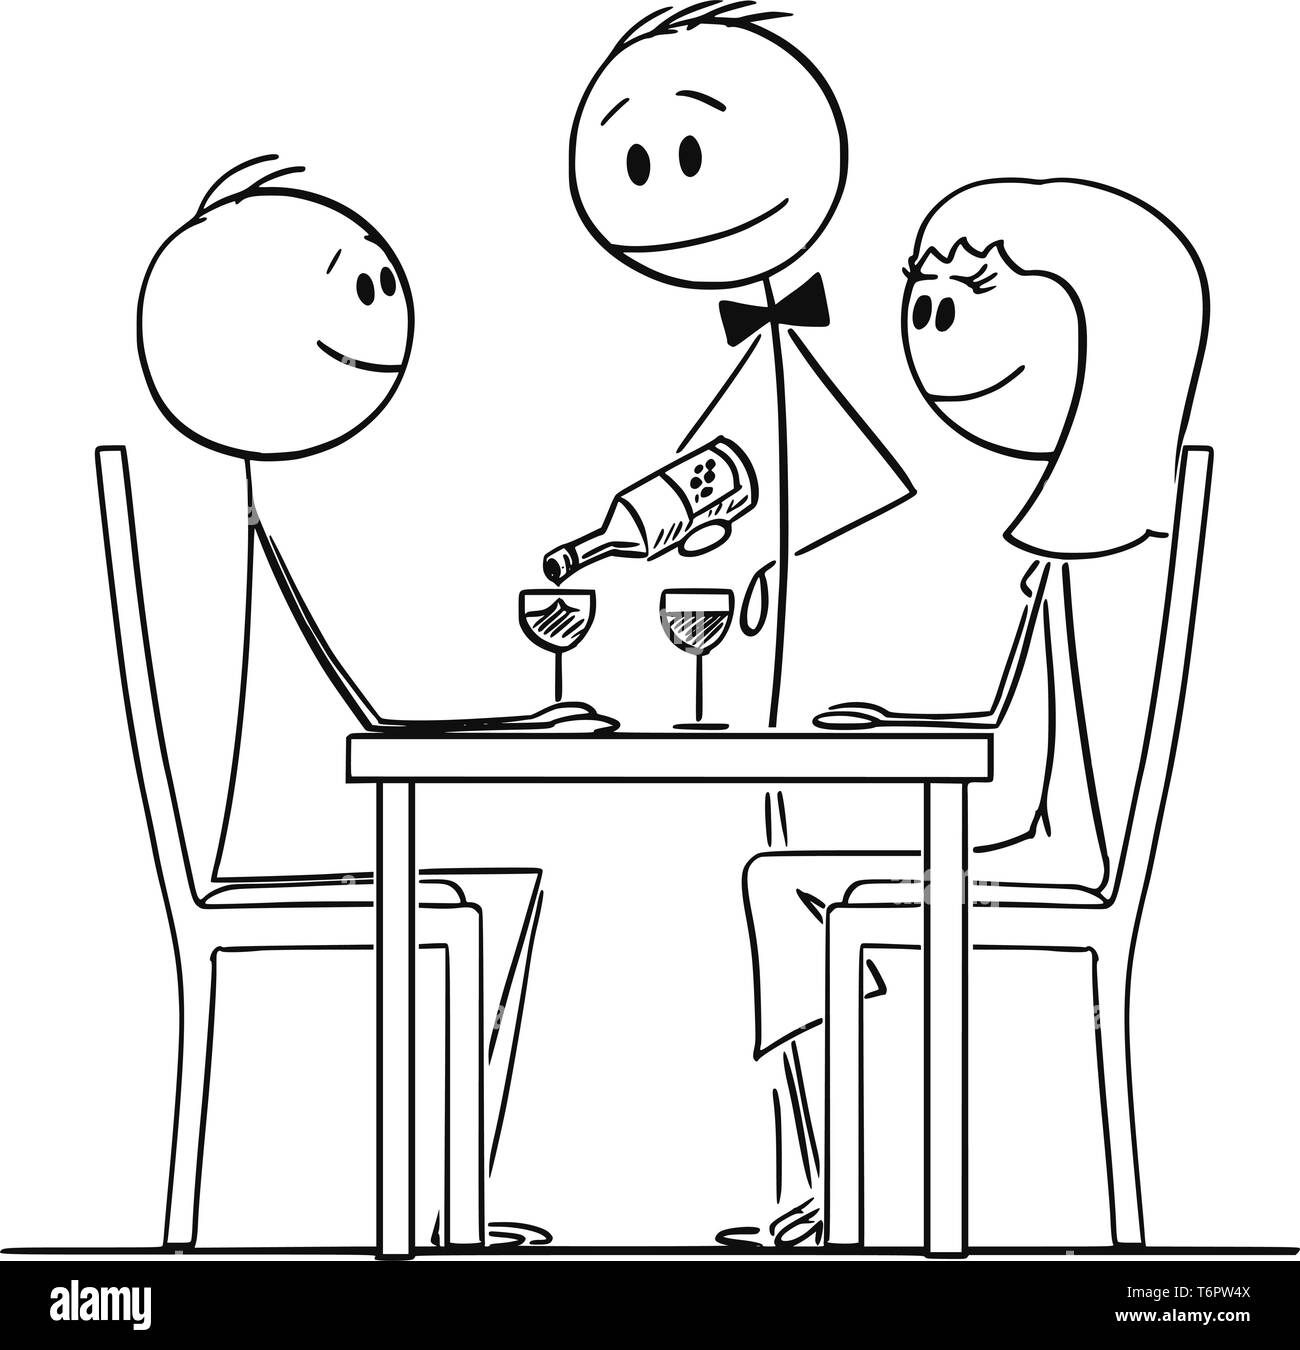 Cartoon Strichmännchen Zeichnen konzeptionelle Darstellung der liebenden Paar von Mann und Frau, hinter einem Tisch im Restaurant und die Kellner gießen Wein in Gläsern. Stock Vektor